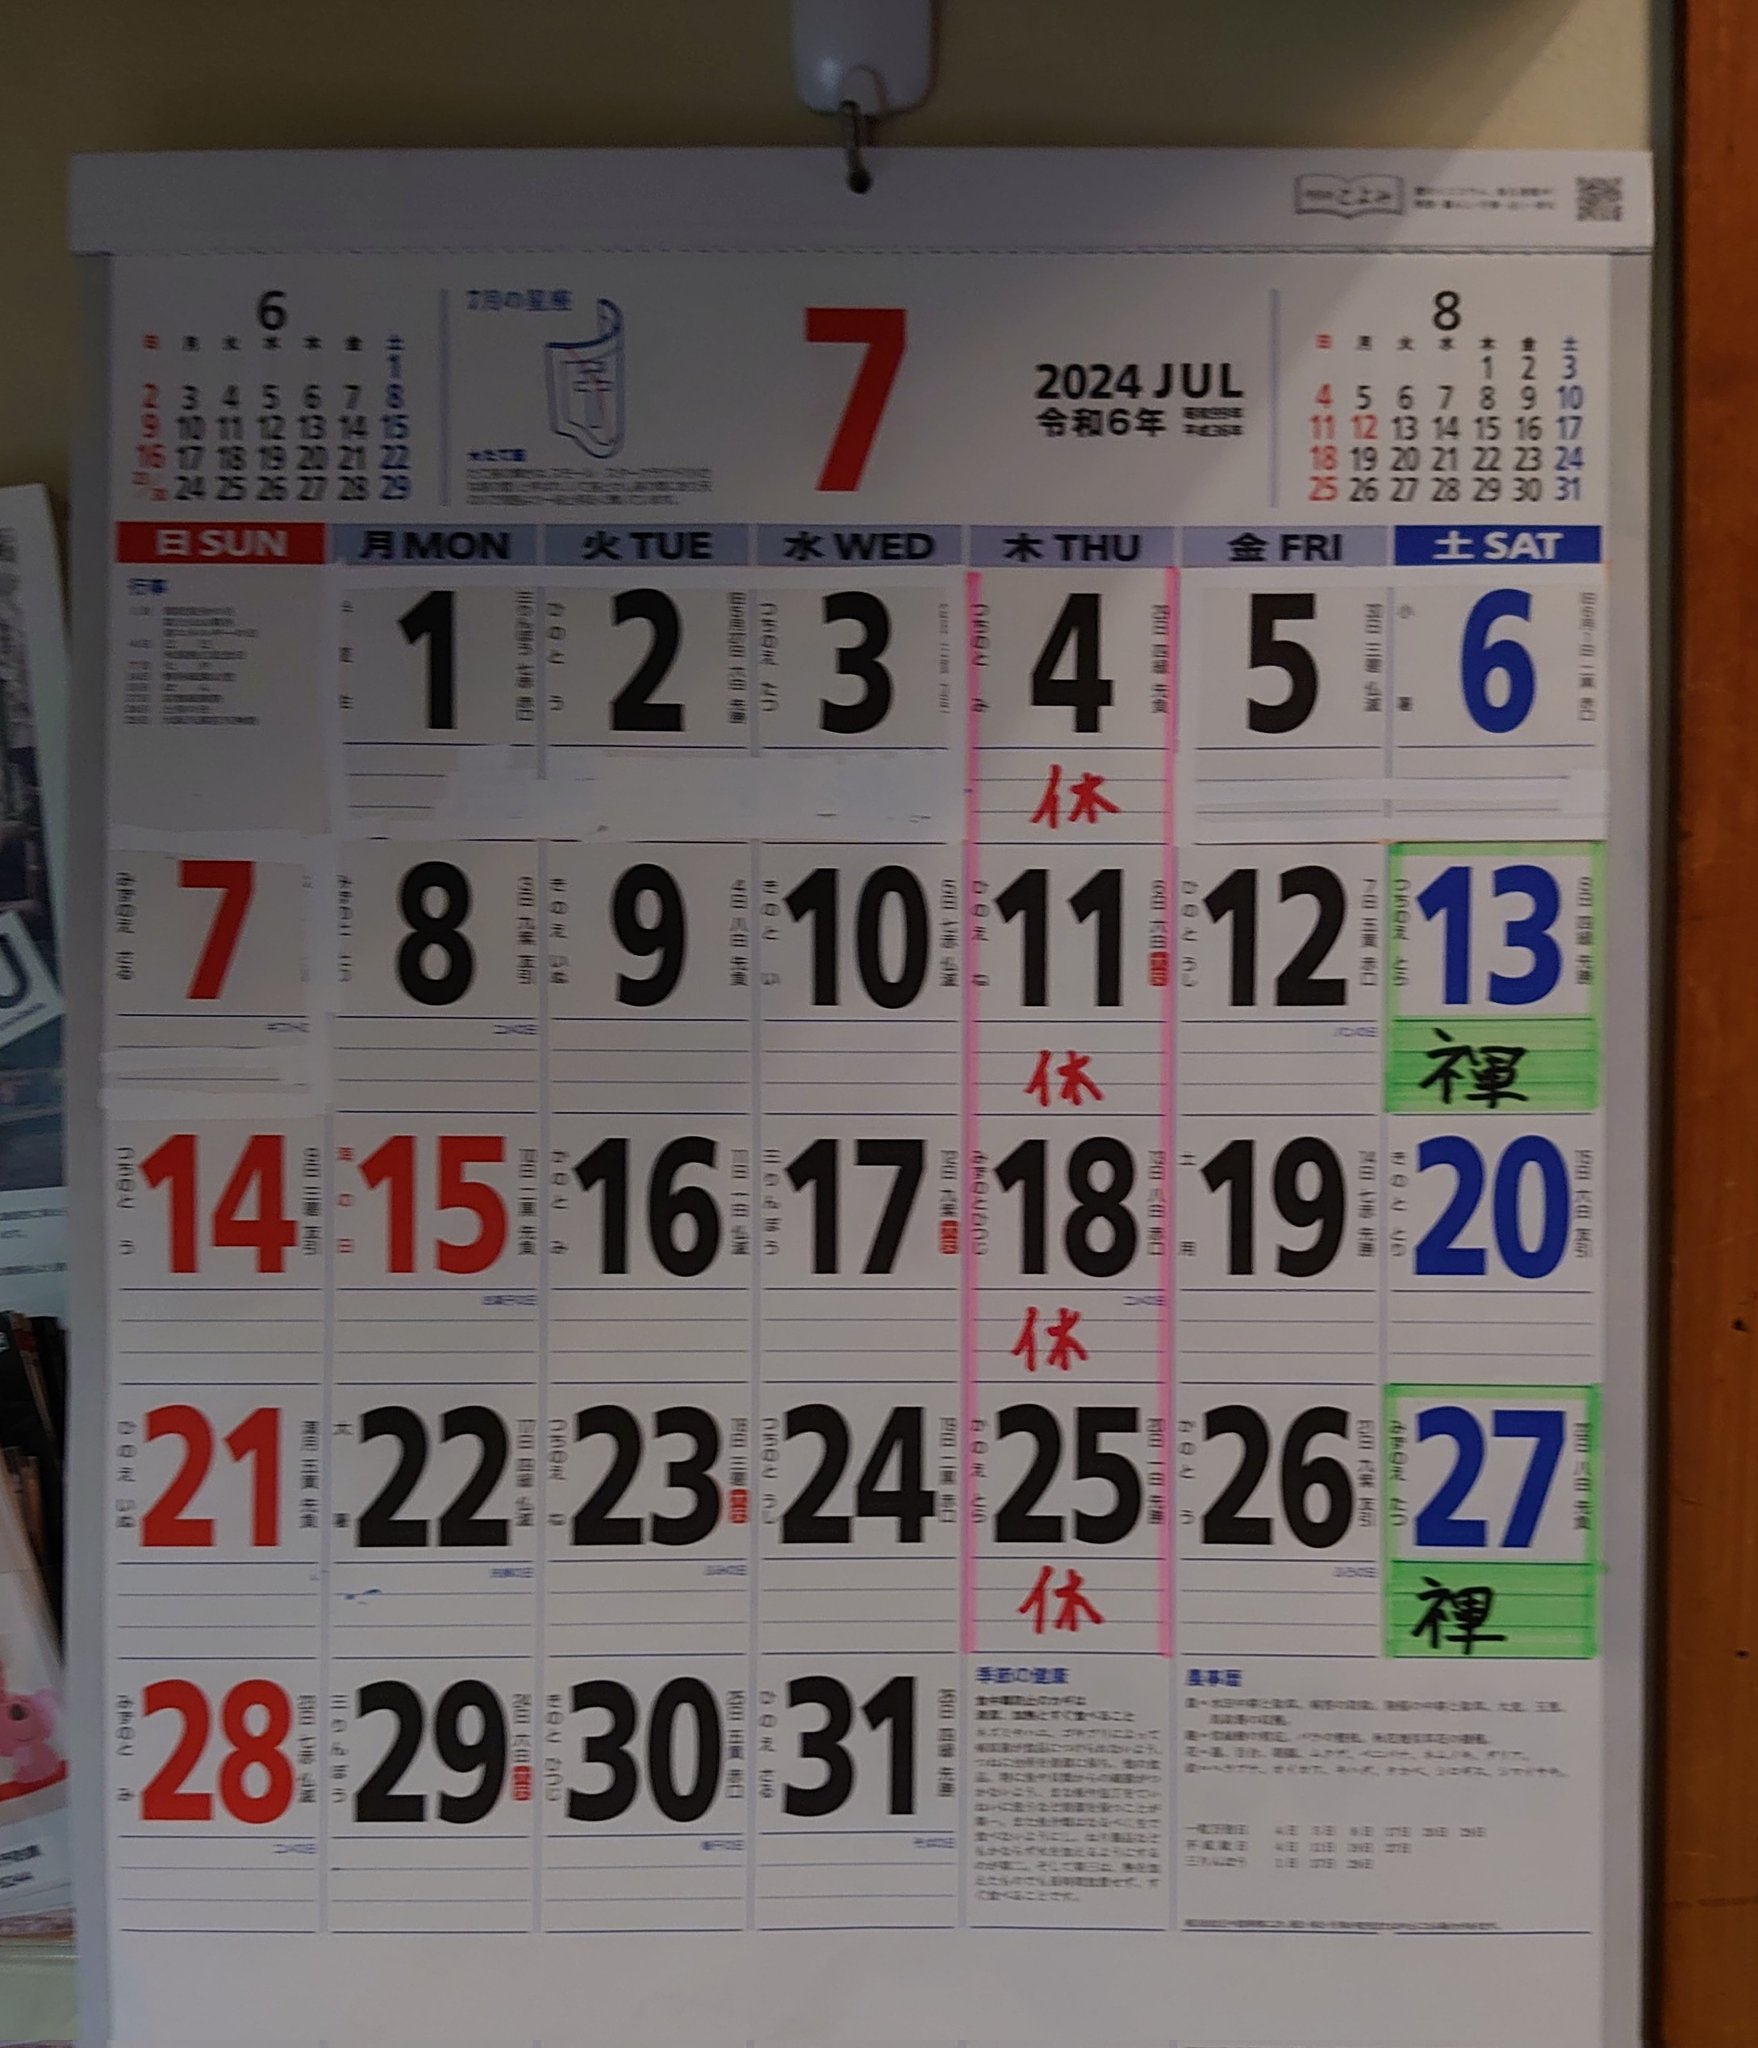 ゲイバー 幸六堂 営業・イベントカレンダー No.1